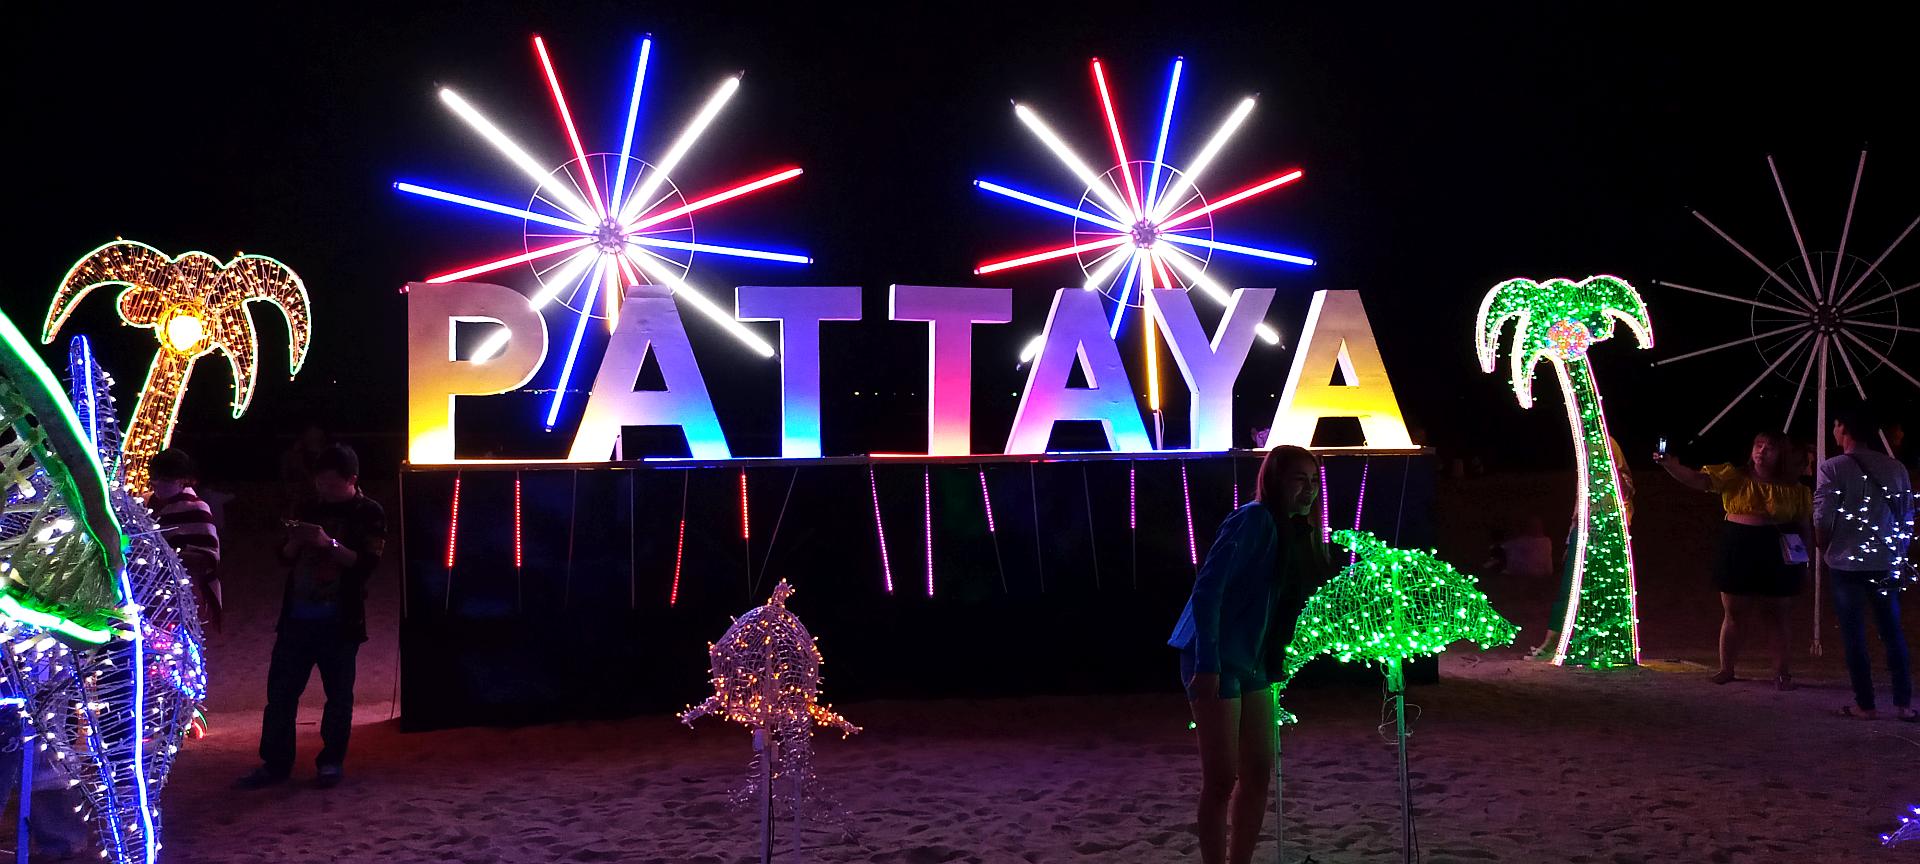 Pattaya, before Neo Pattaya